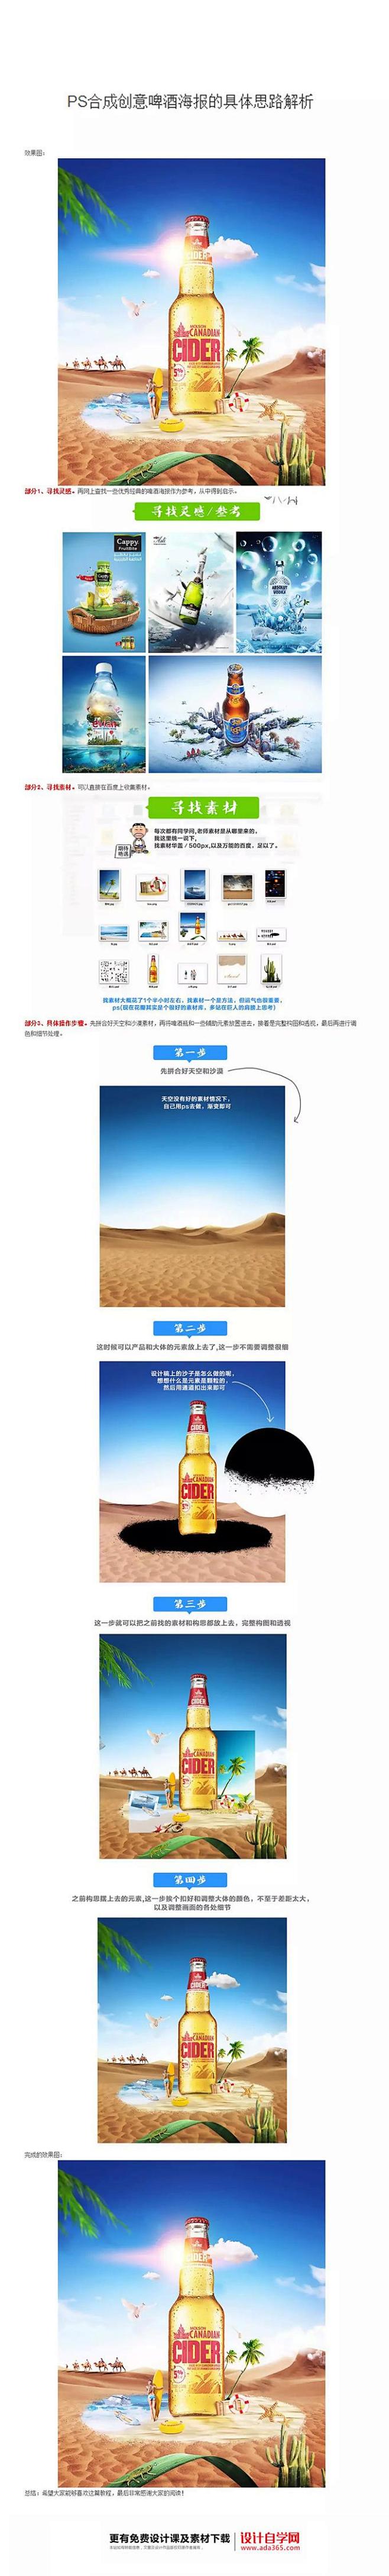 中秋节电商海报的图片组合- 网商- 设计...